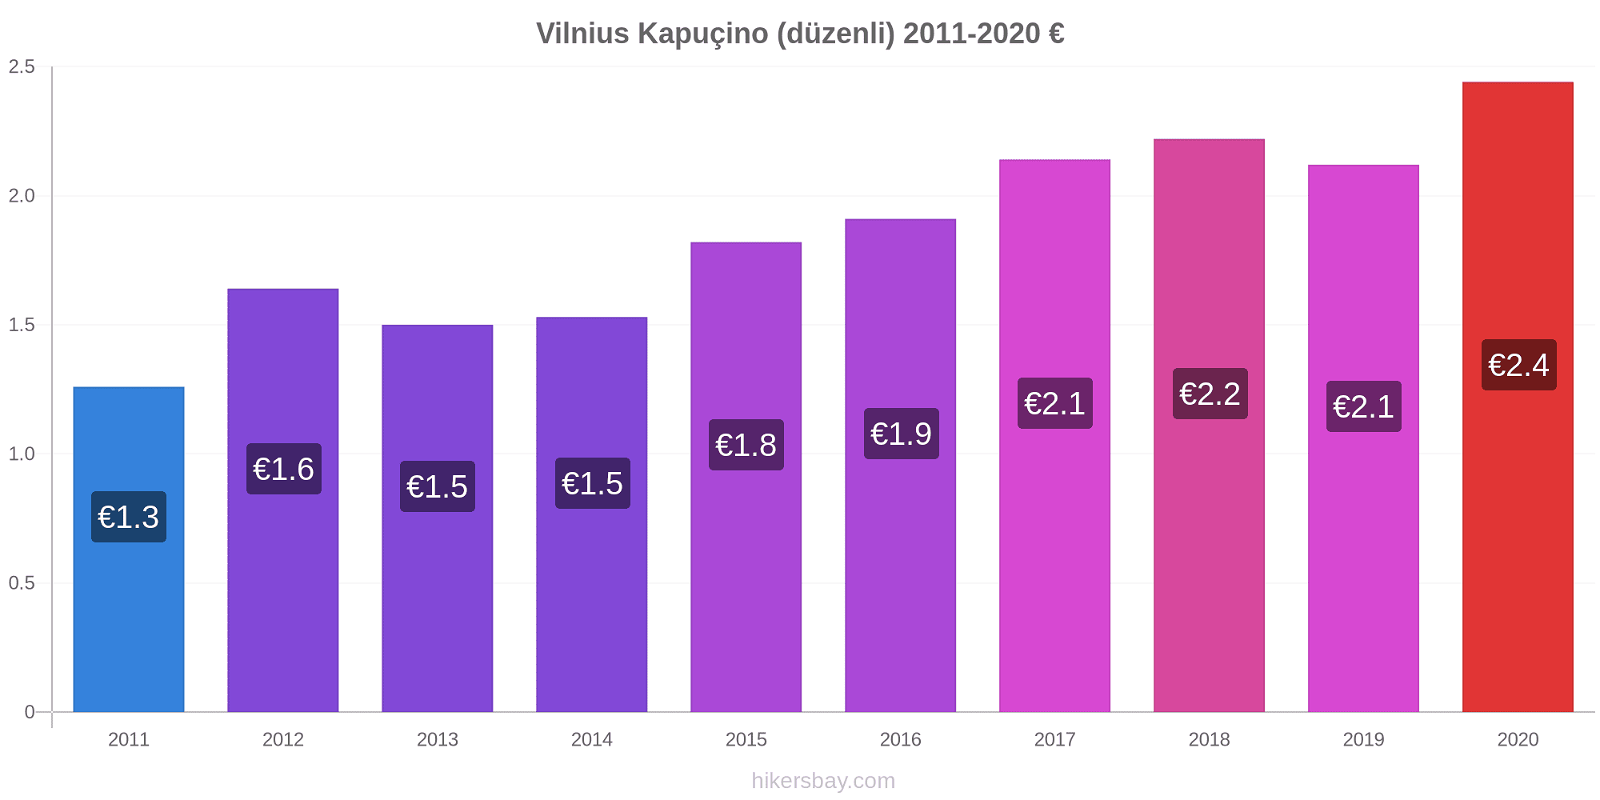 Vilnius fiyat değişiklikleri Kapuçino (düzenli) hikersbay.com